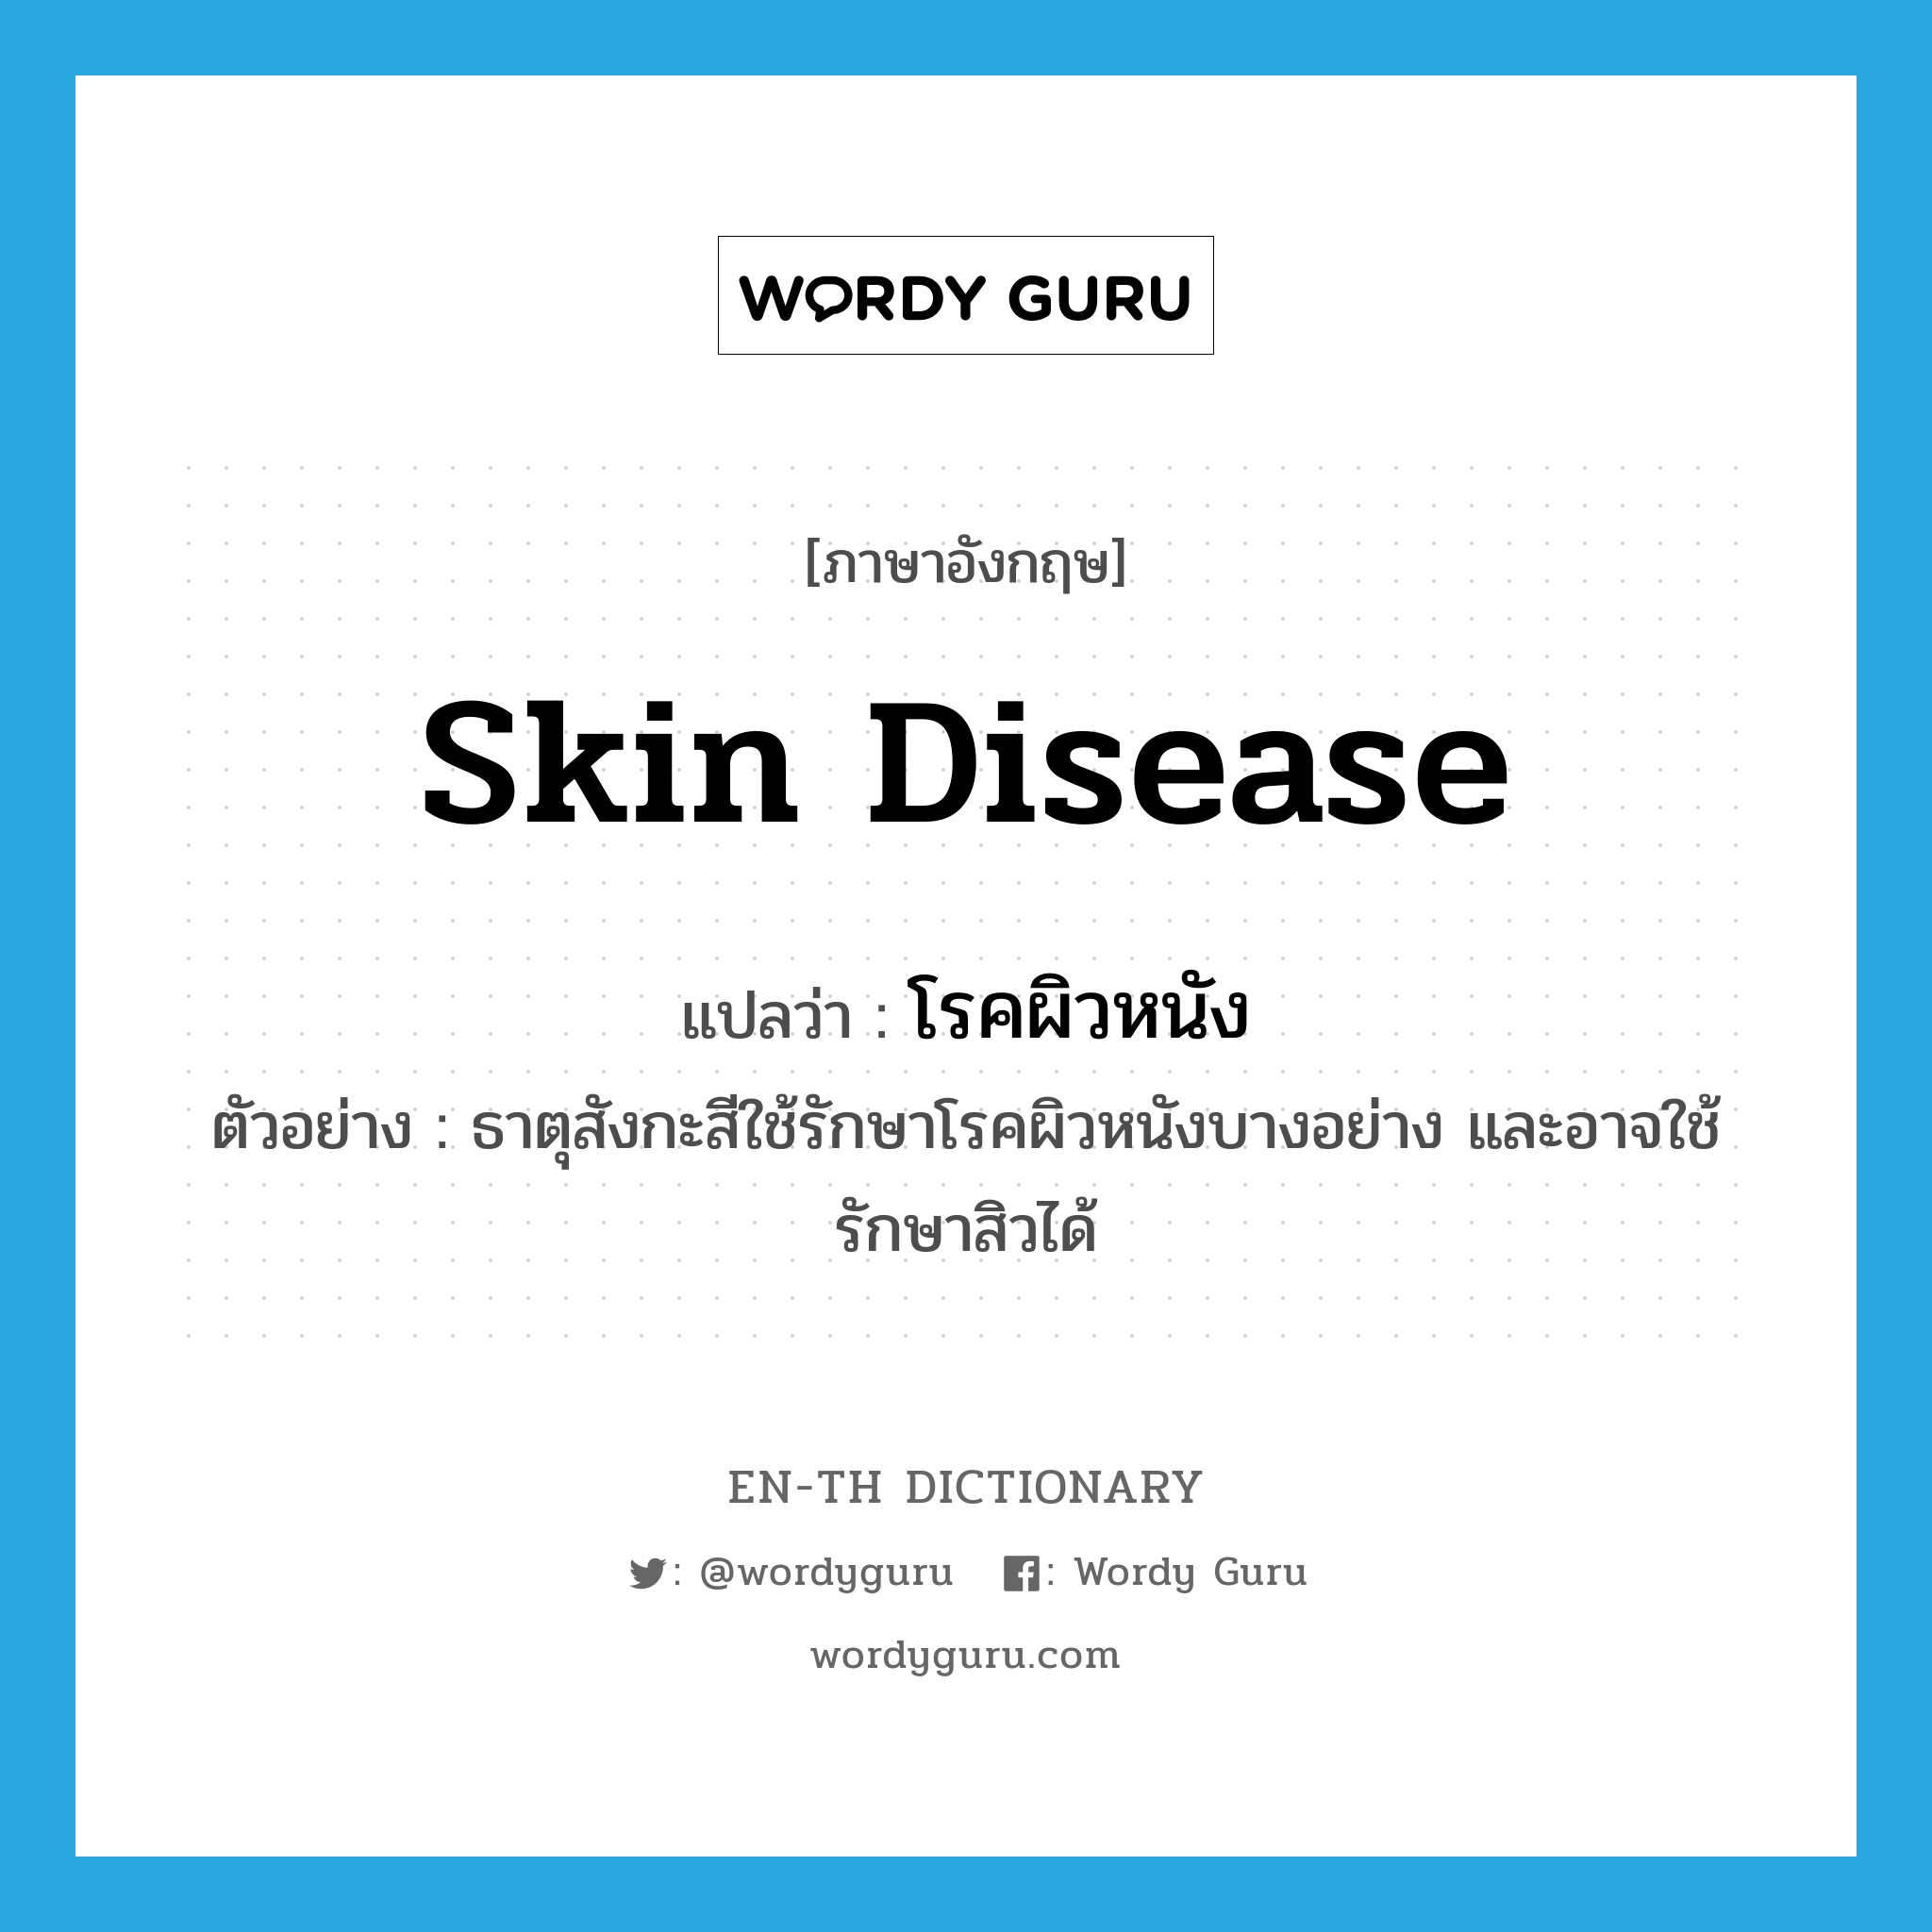 skin disease แปลว่า?, คำศัพท์ภาษาอังกฤษ skin disease แปลว่า โรคผิวหนัง ประเภท N ตัวอย่าง ธาตุสังกะสีใช้รักษาโรคผิวหนังบางอย่าง และอาจใช้รักษาสิวได้ หมวด N